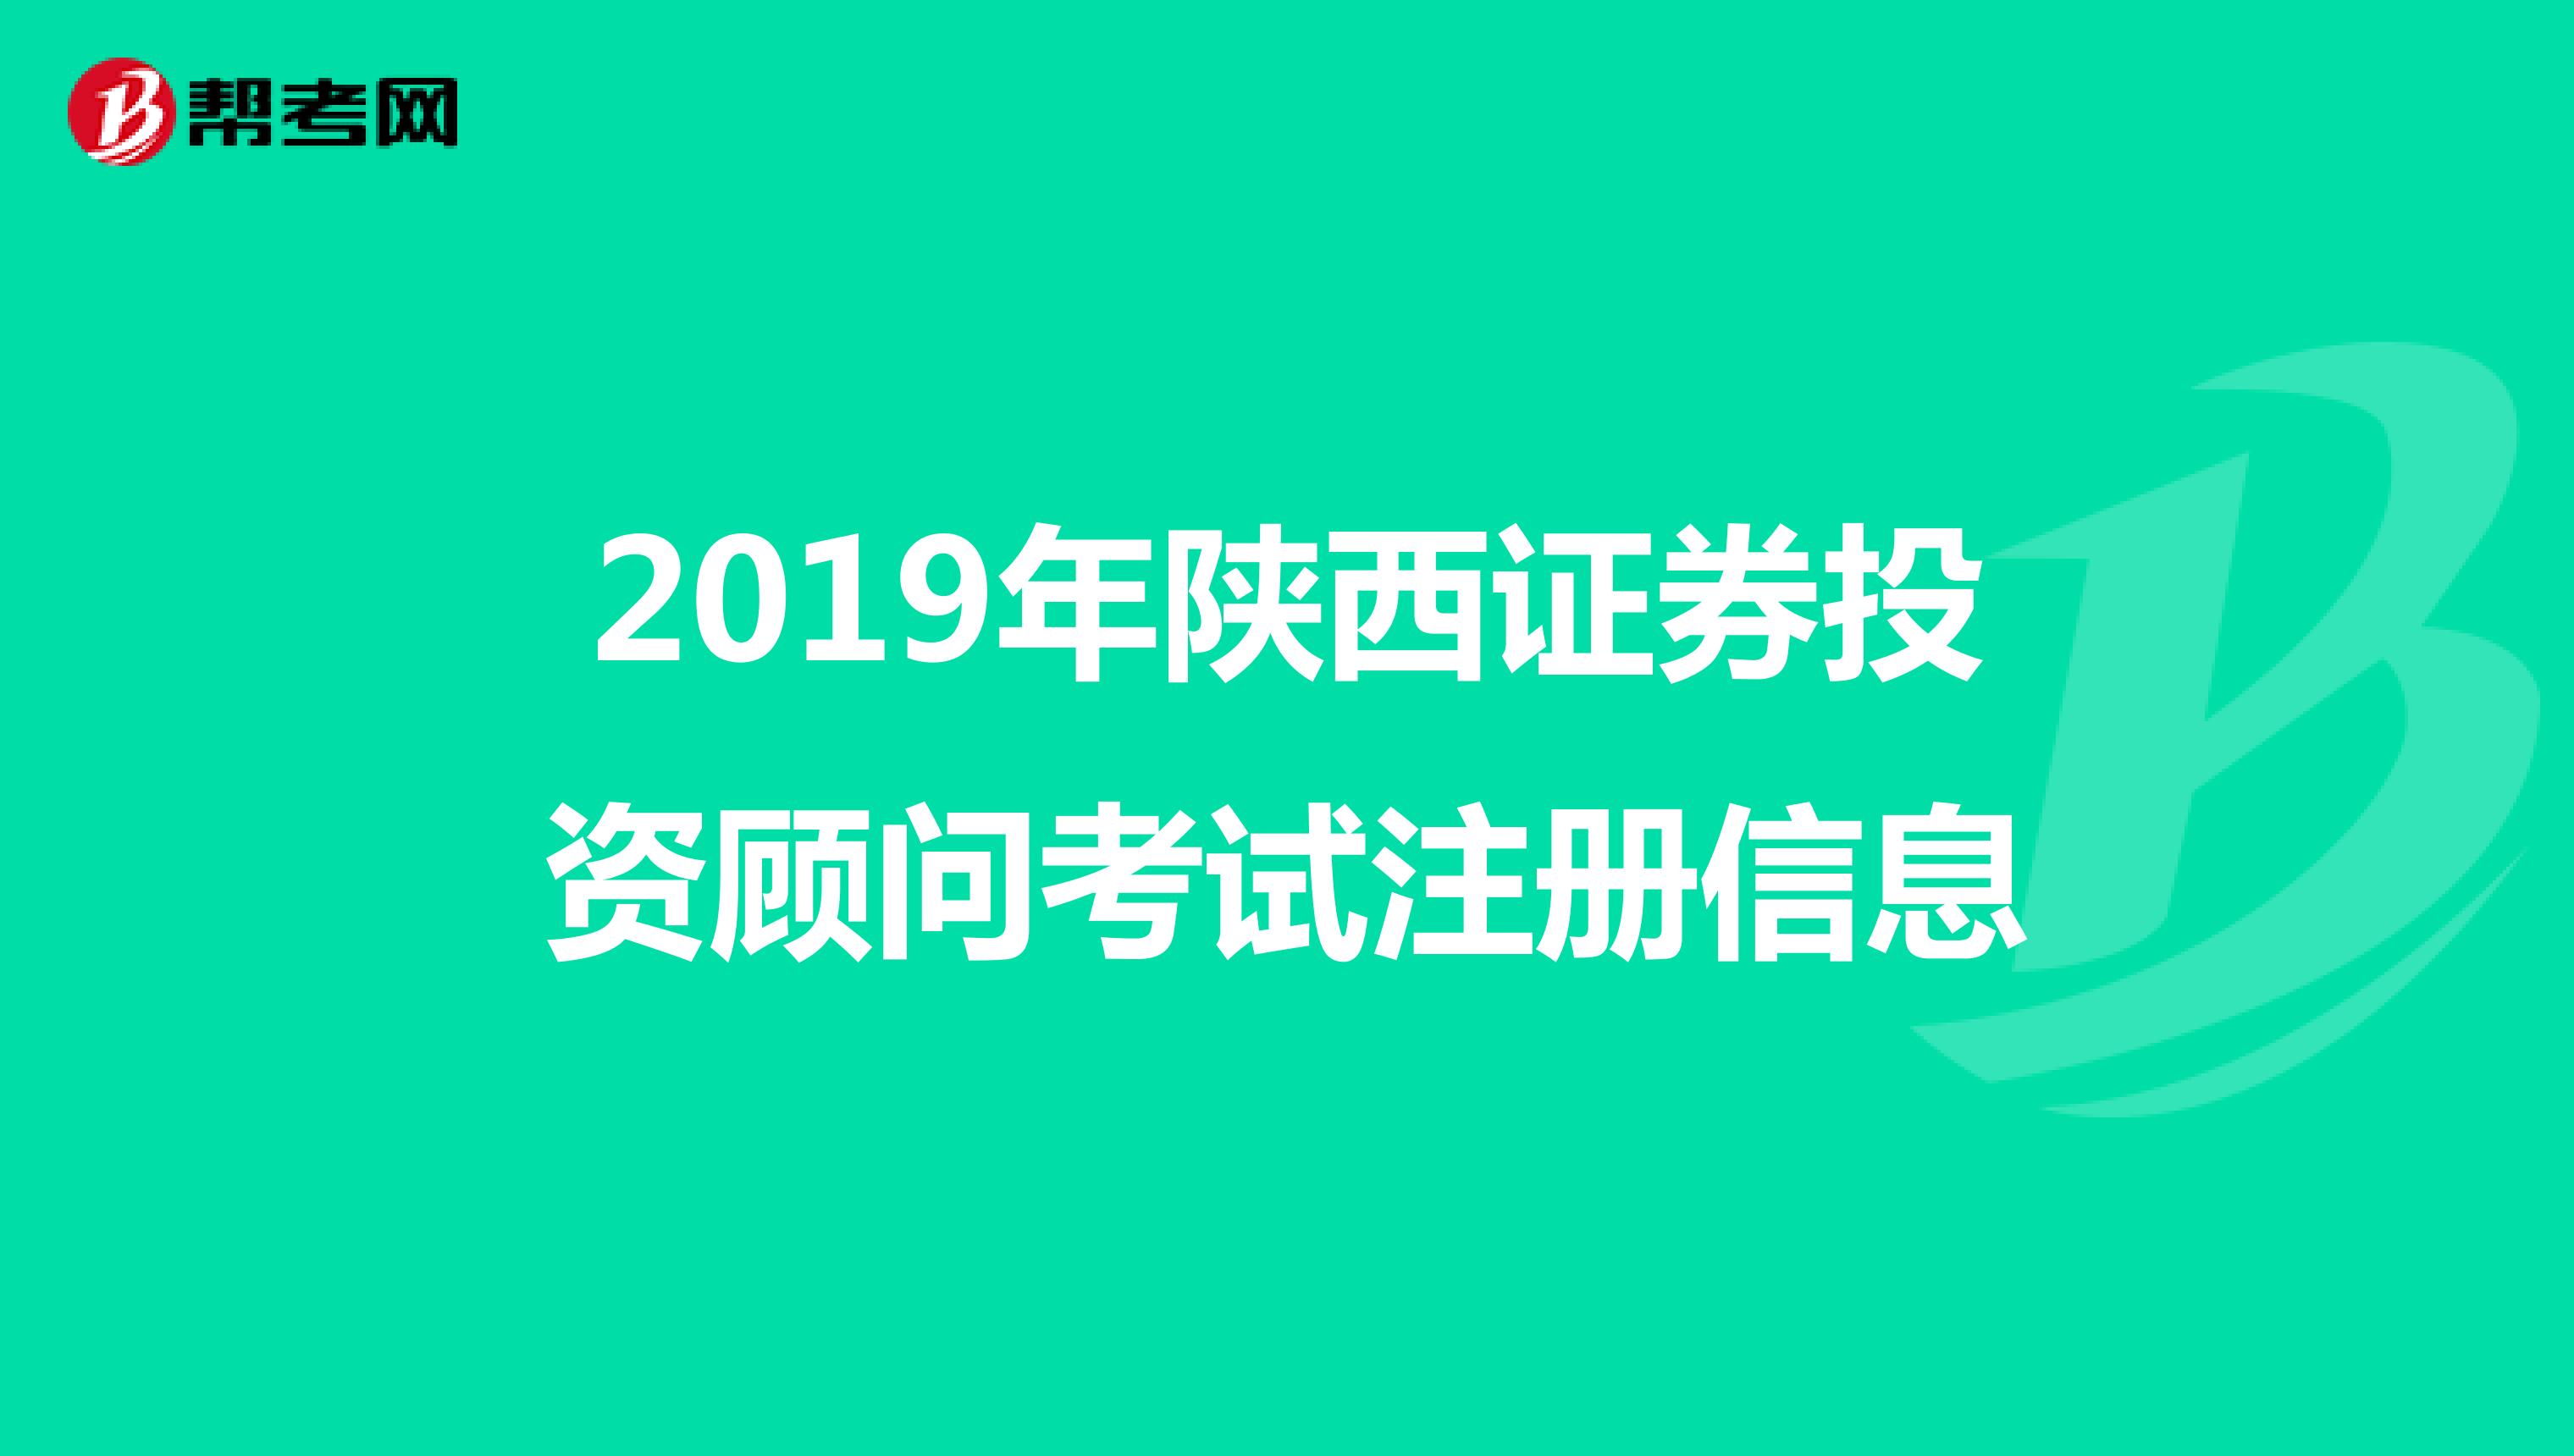 2020年陕西证券投资顾问考试注册信息